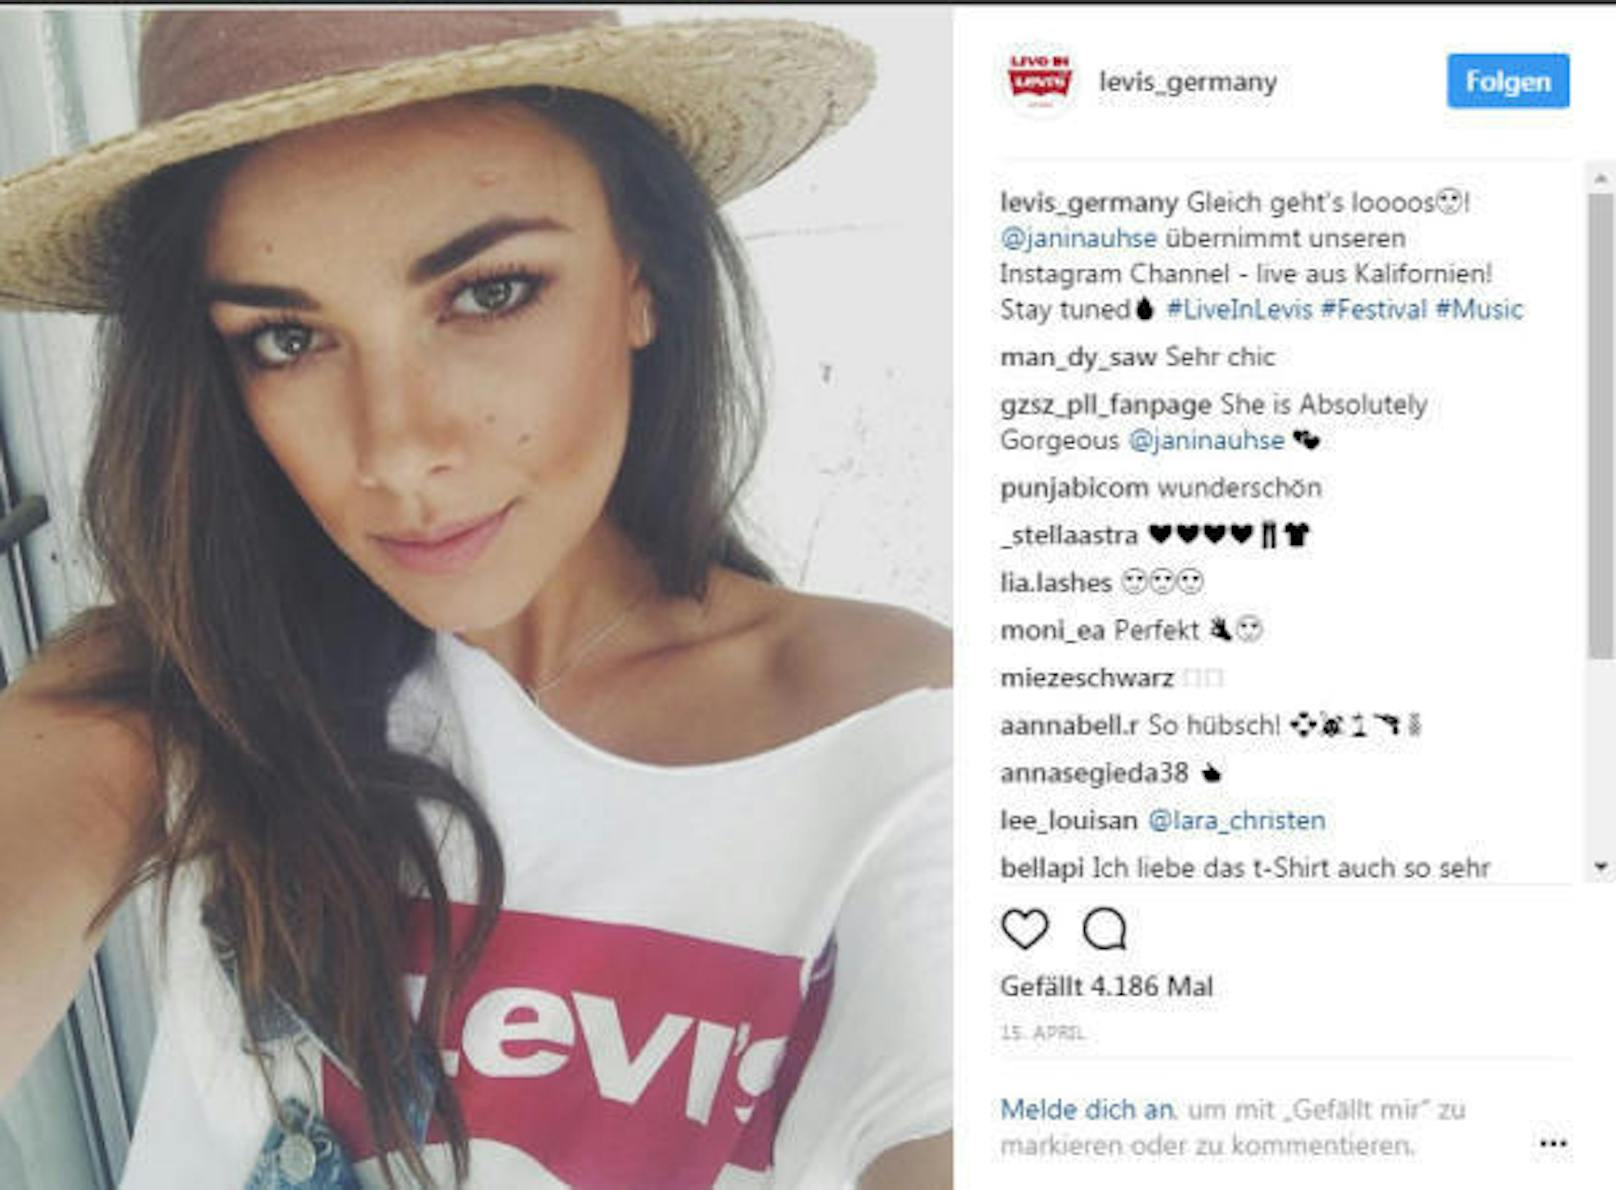 Letztes Jahr startete Levi's eine Werbeoffensive und setzte auf bekannte Instagrammer. Janina Uhse beispielsweise erreicht 664.000 Follower.